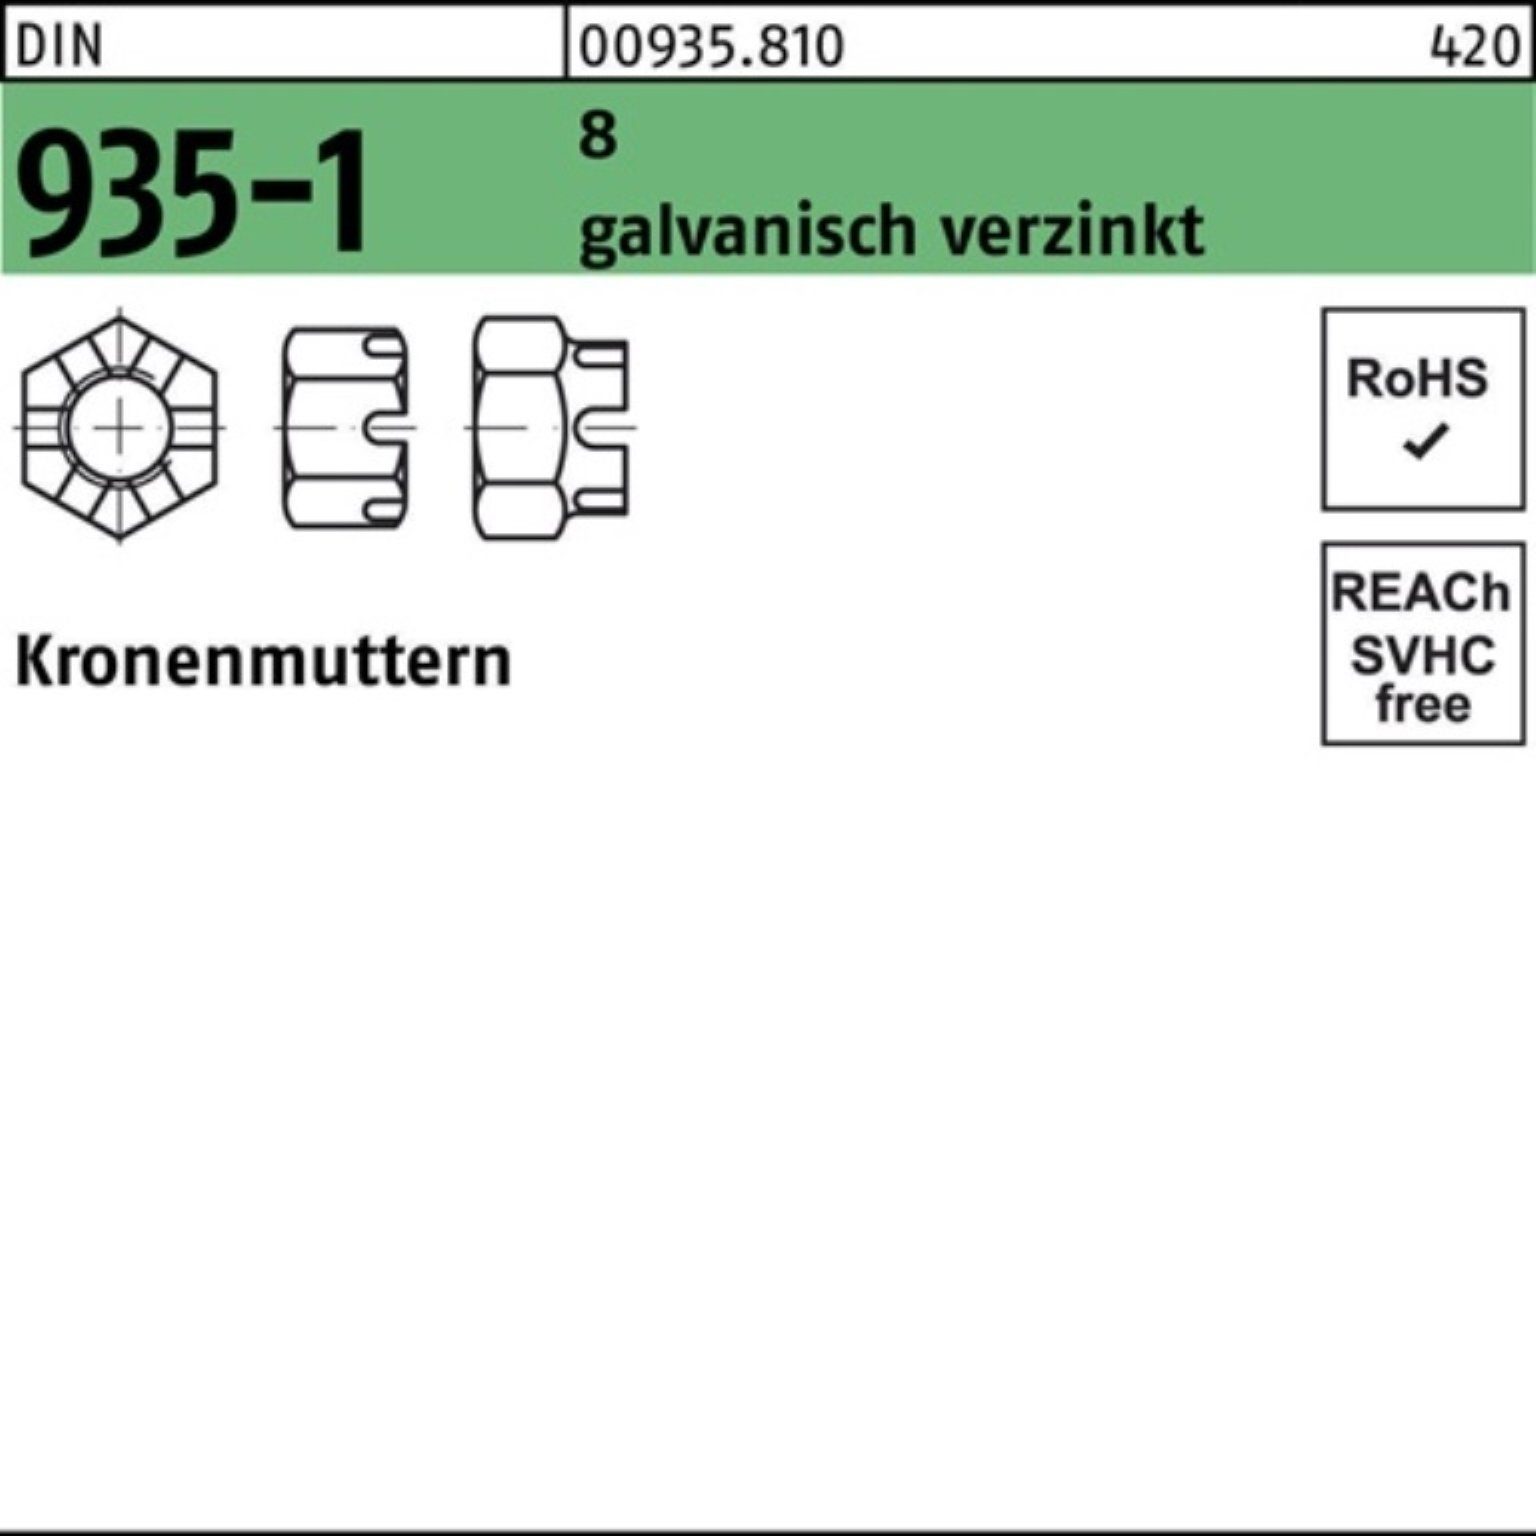 Reyher Kronenmutter 100er Pack Kronenmutter 935-1 8 25 galv.verz. DIN Stück 935-1 DIN M20